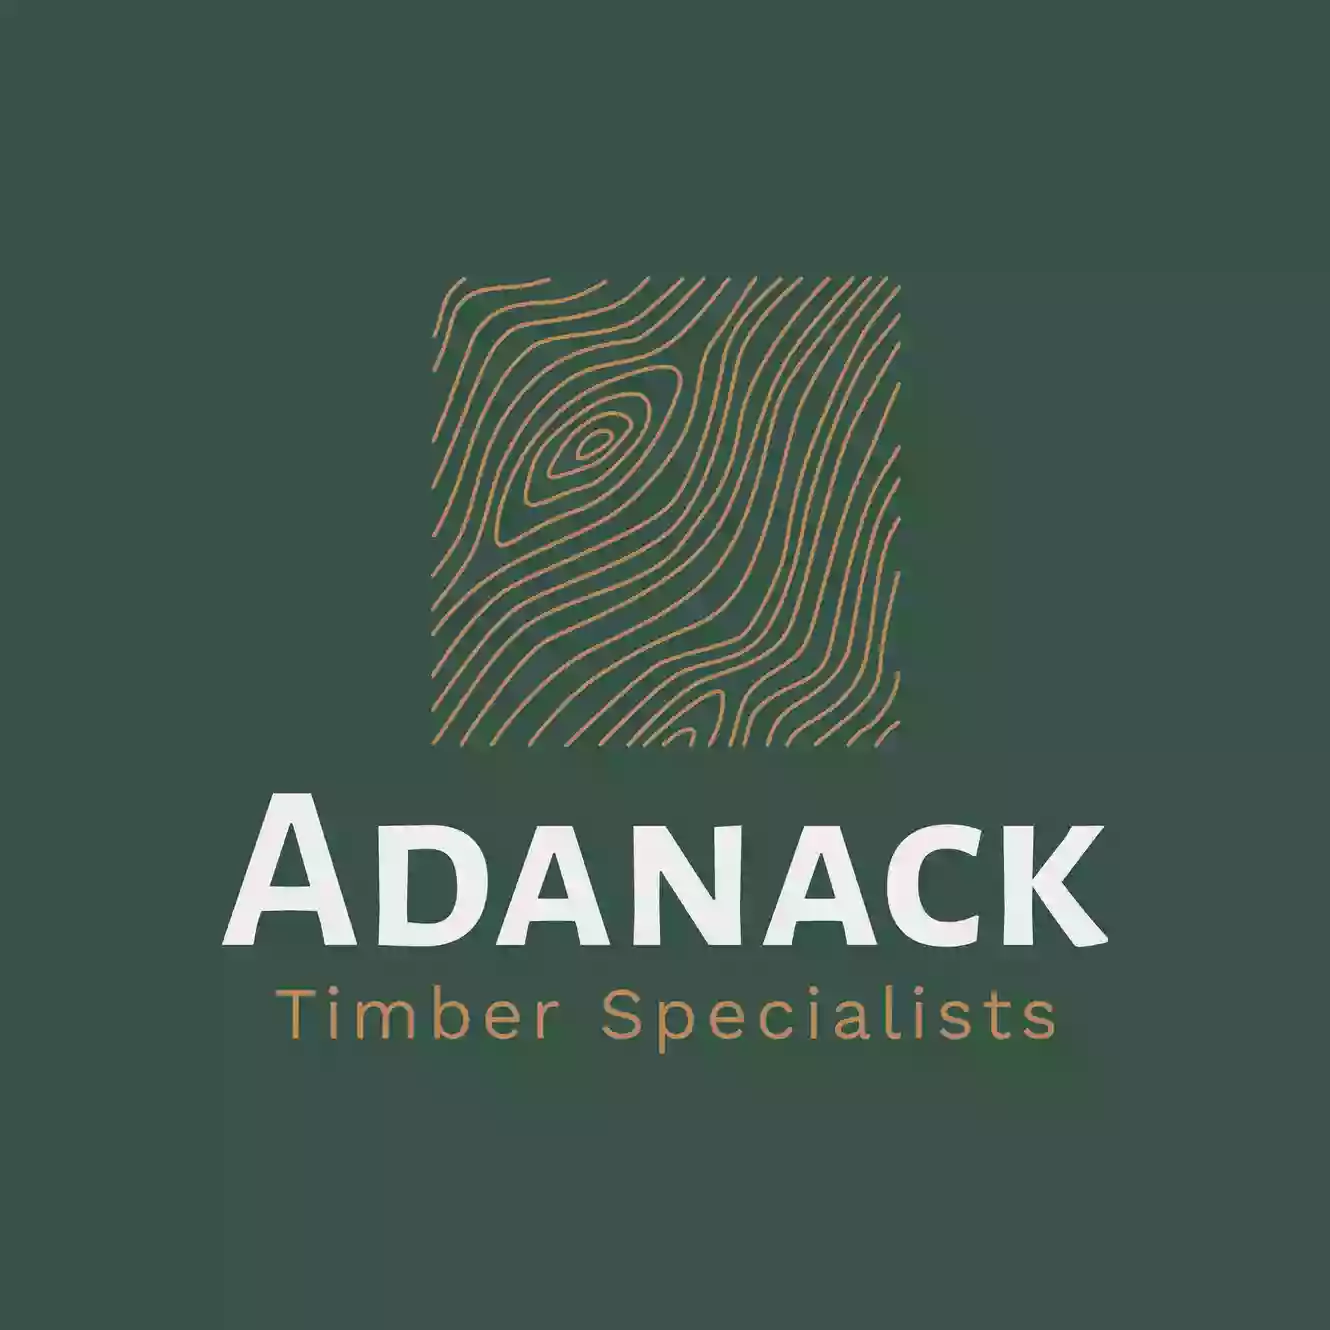 Adanack Ltd